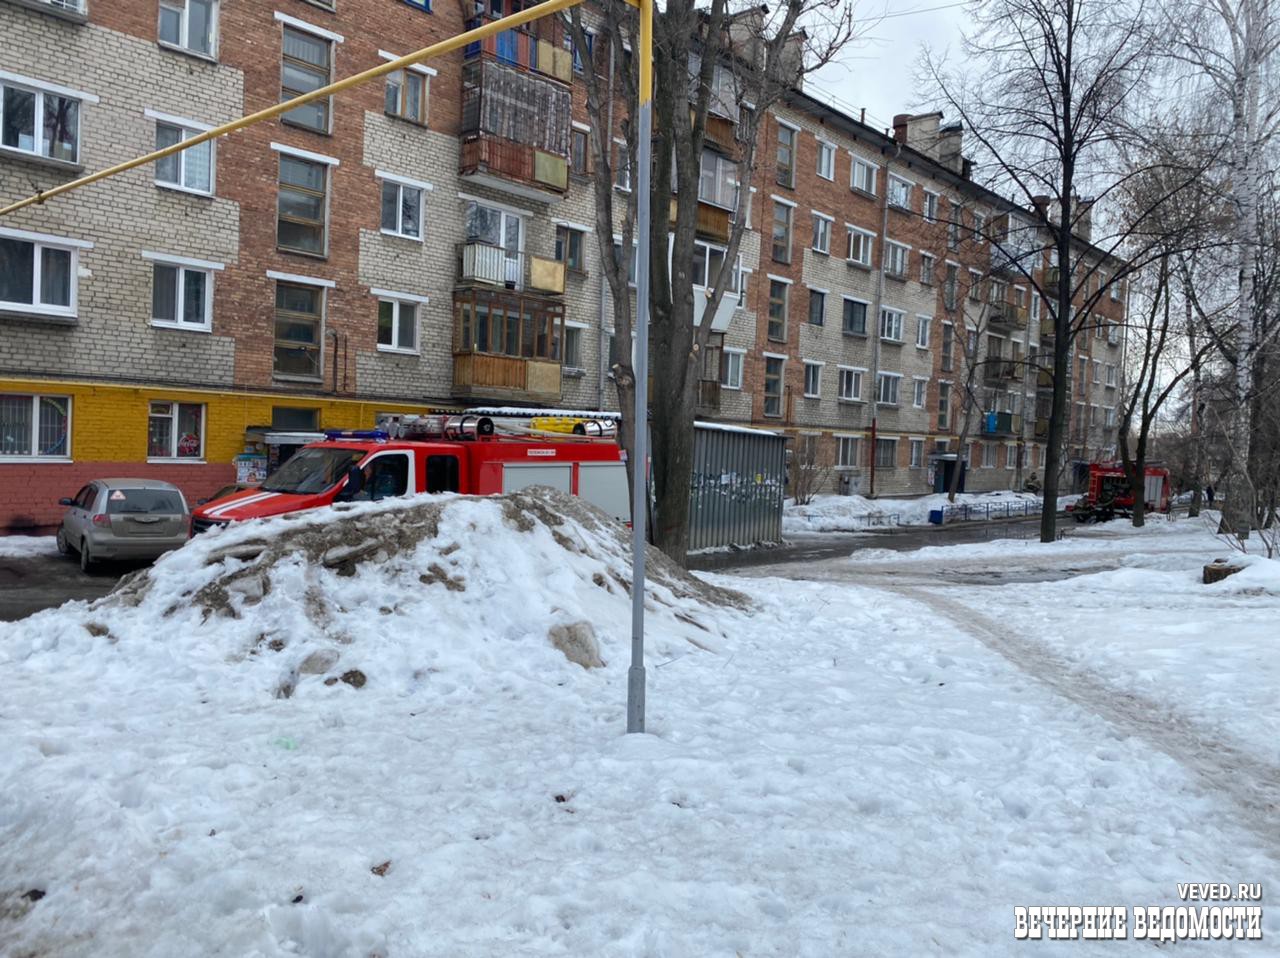 В жилом доме на улице Одинарка в Екатеринбурге произошёл пожар